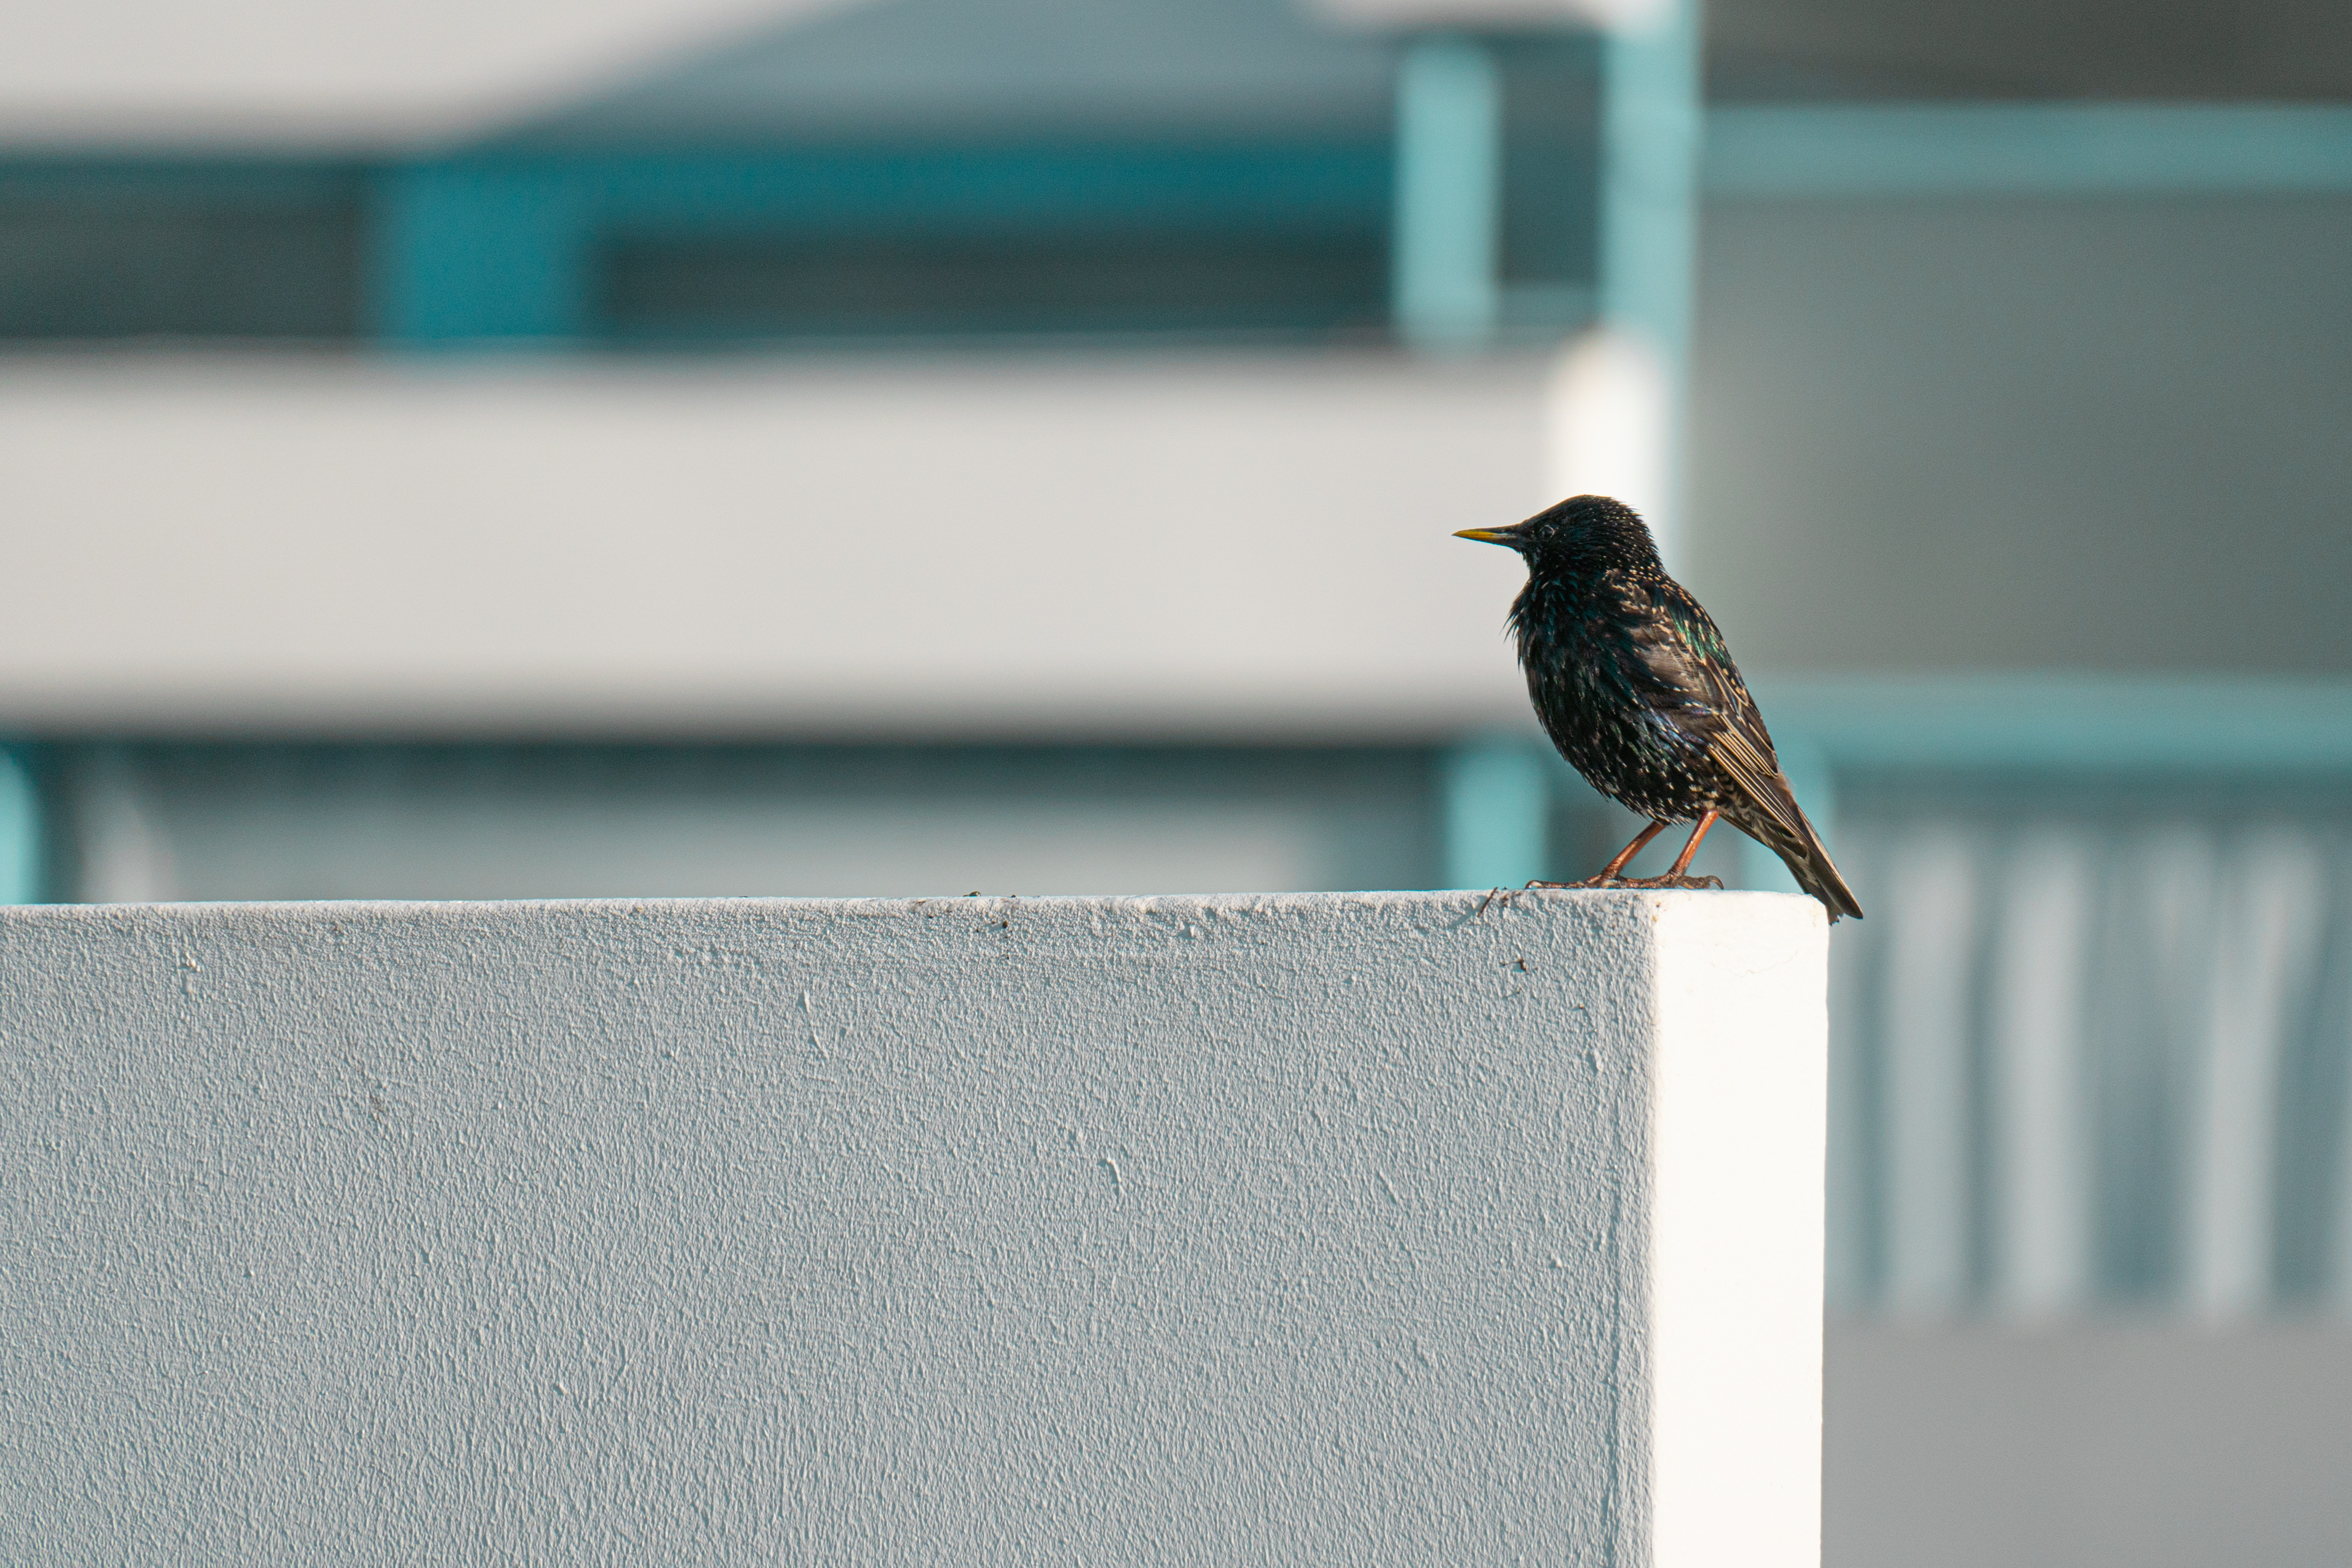 Sparrow on a ledge